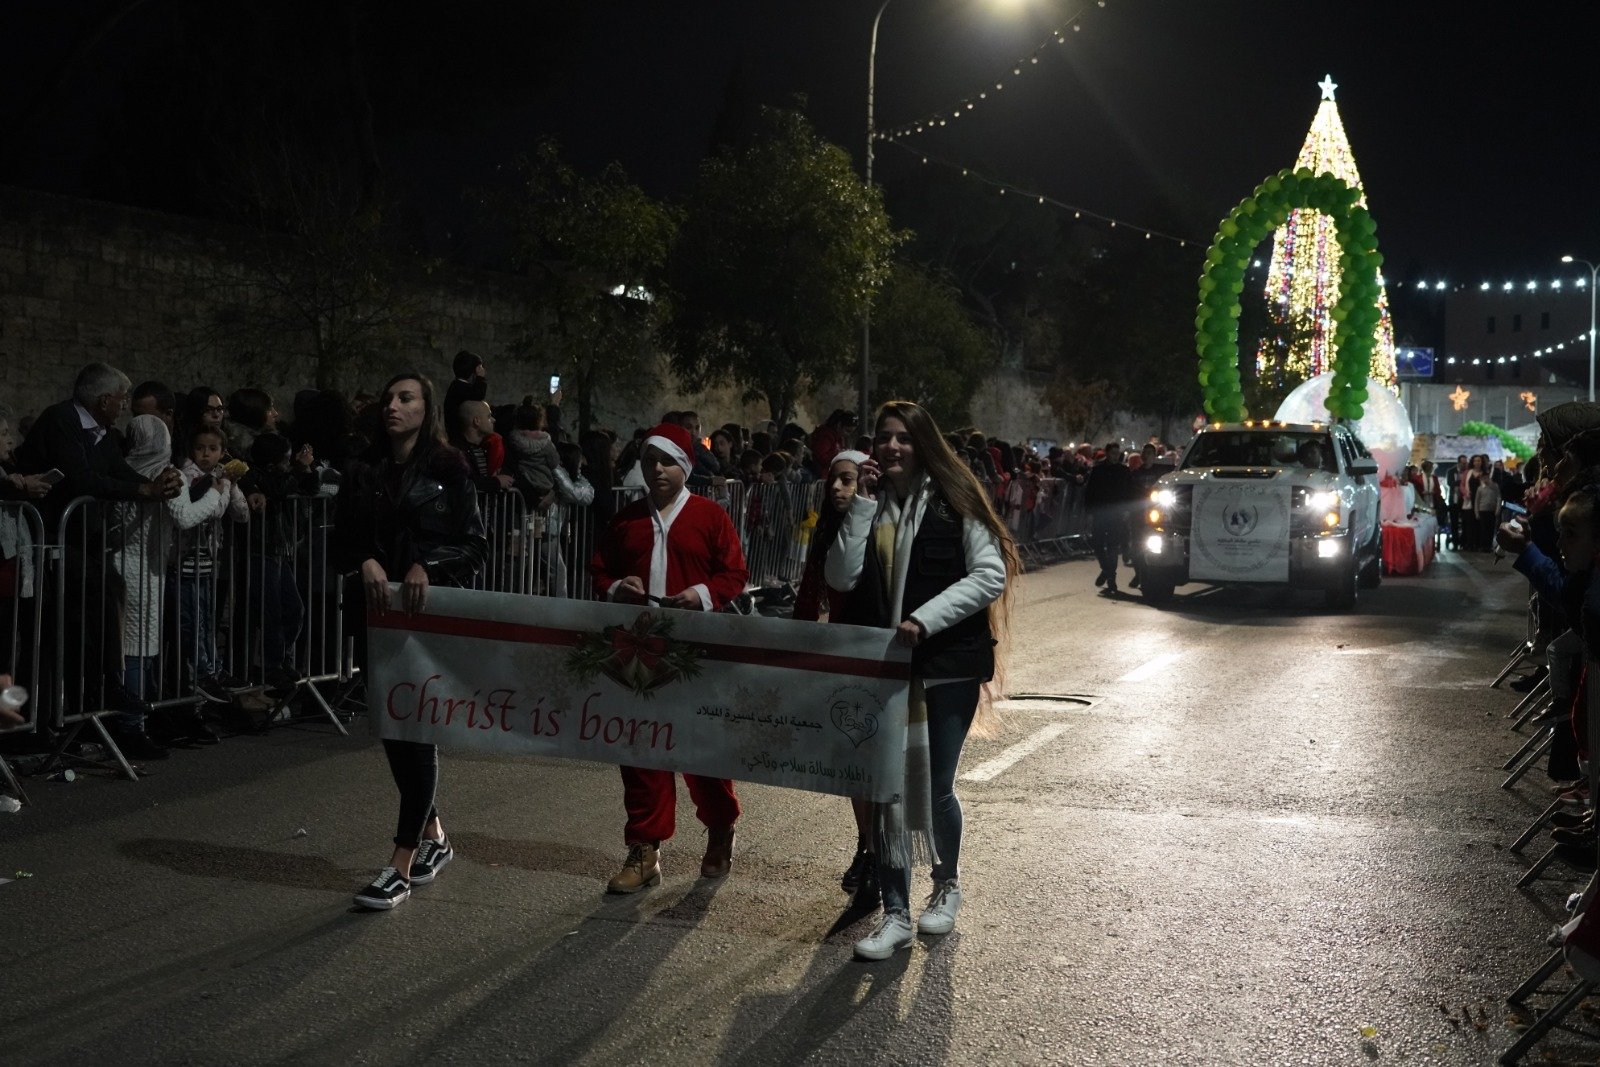 بالصور: "بكرا" يرصد فرحة استقبال الميلاد في الناصرة -170